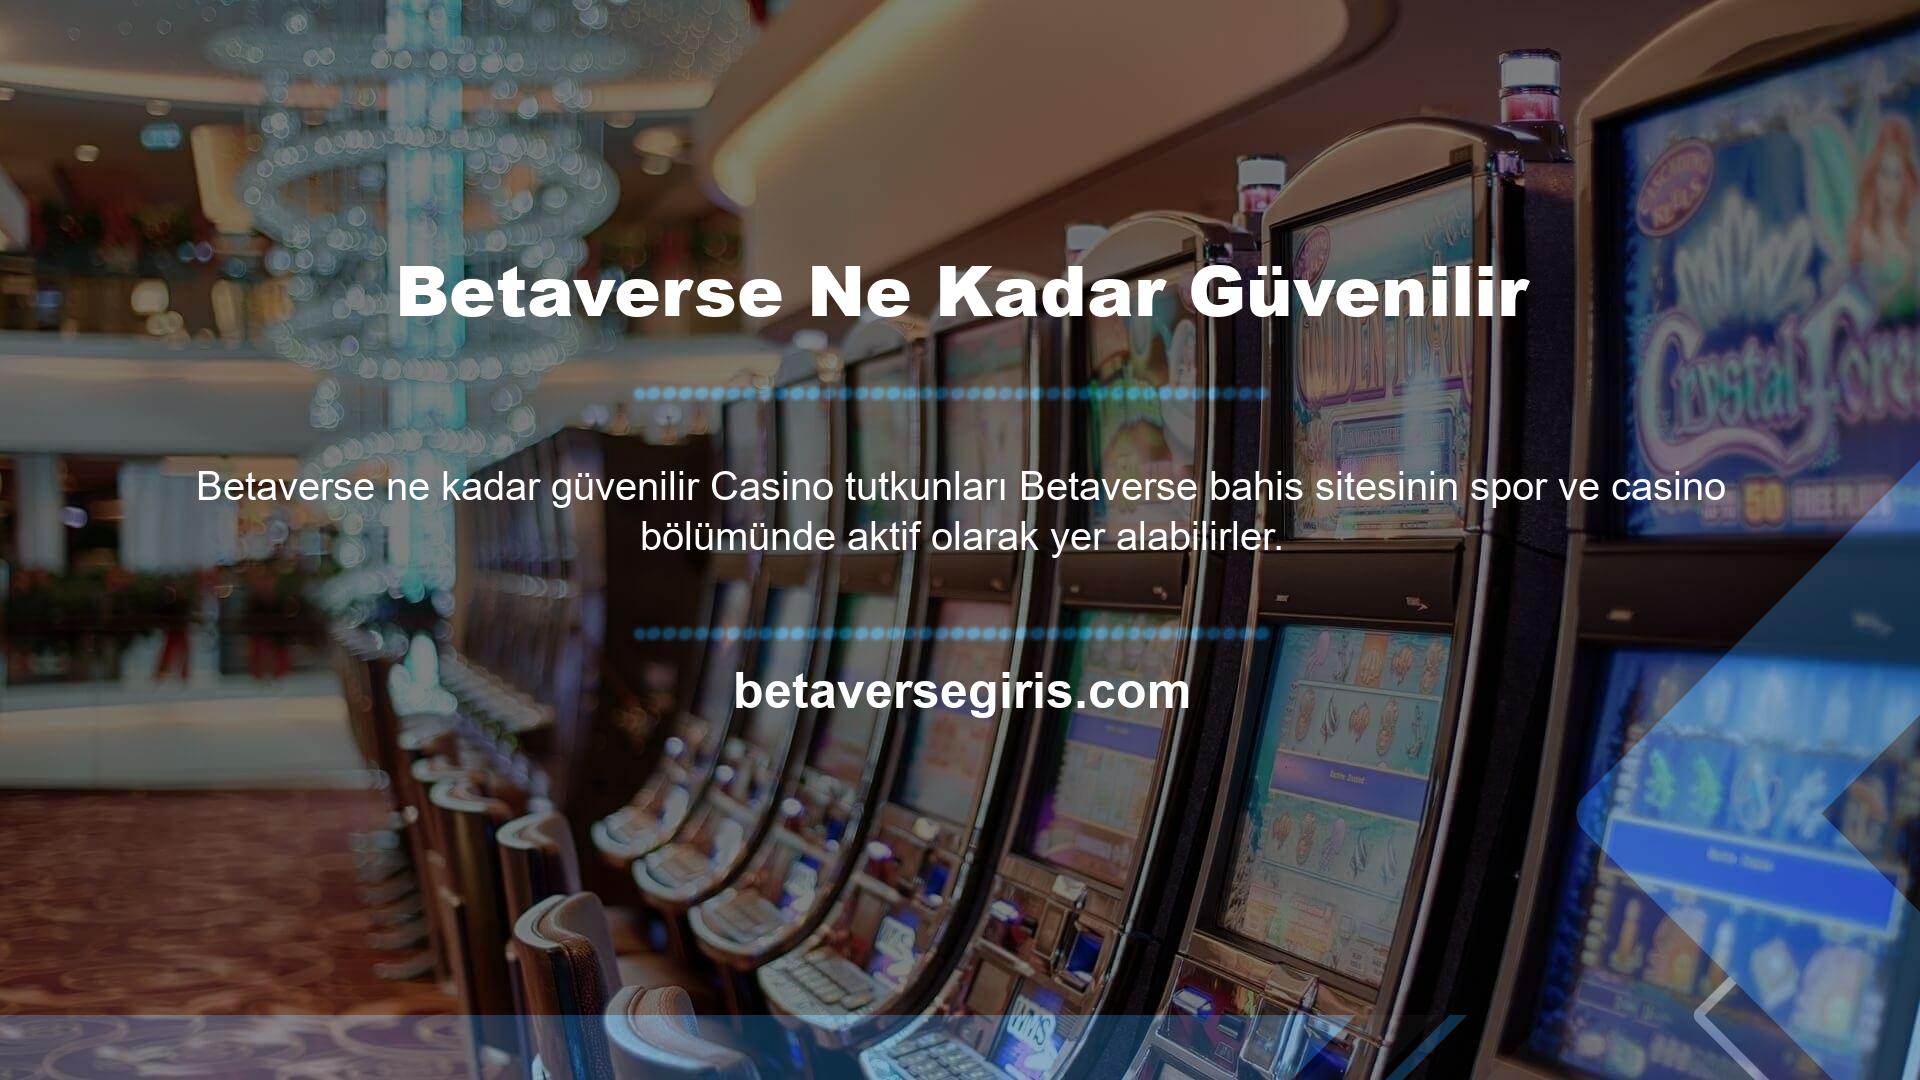 Betaverse canlı bahis ve casino oyunları sitesi hakkında internet forumlarında çok sayıda şikayet ve inceleme bulunmaktadır